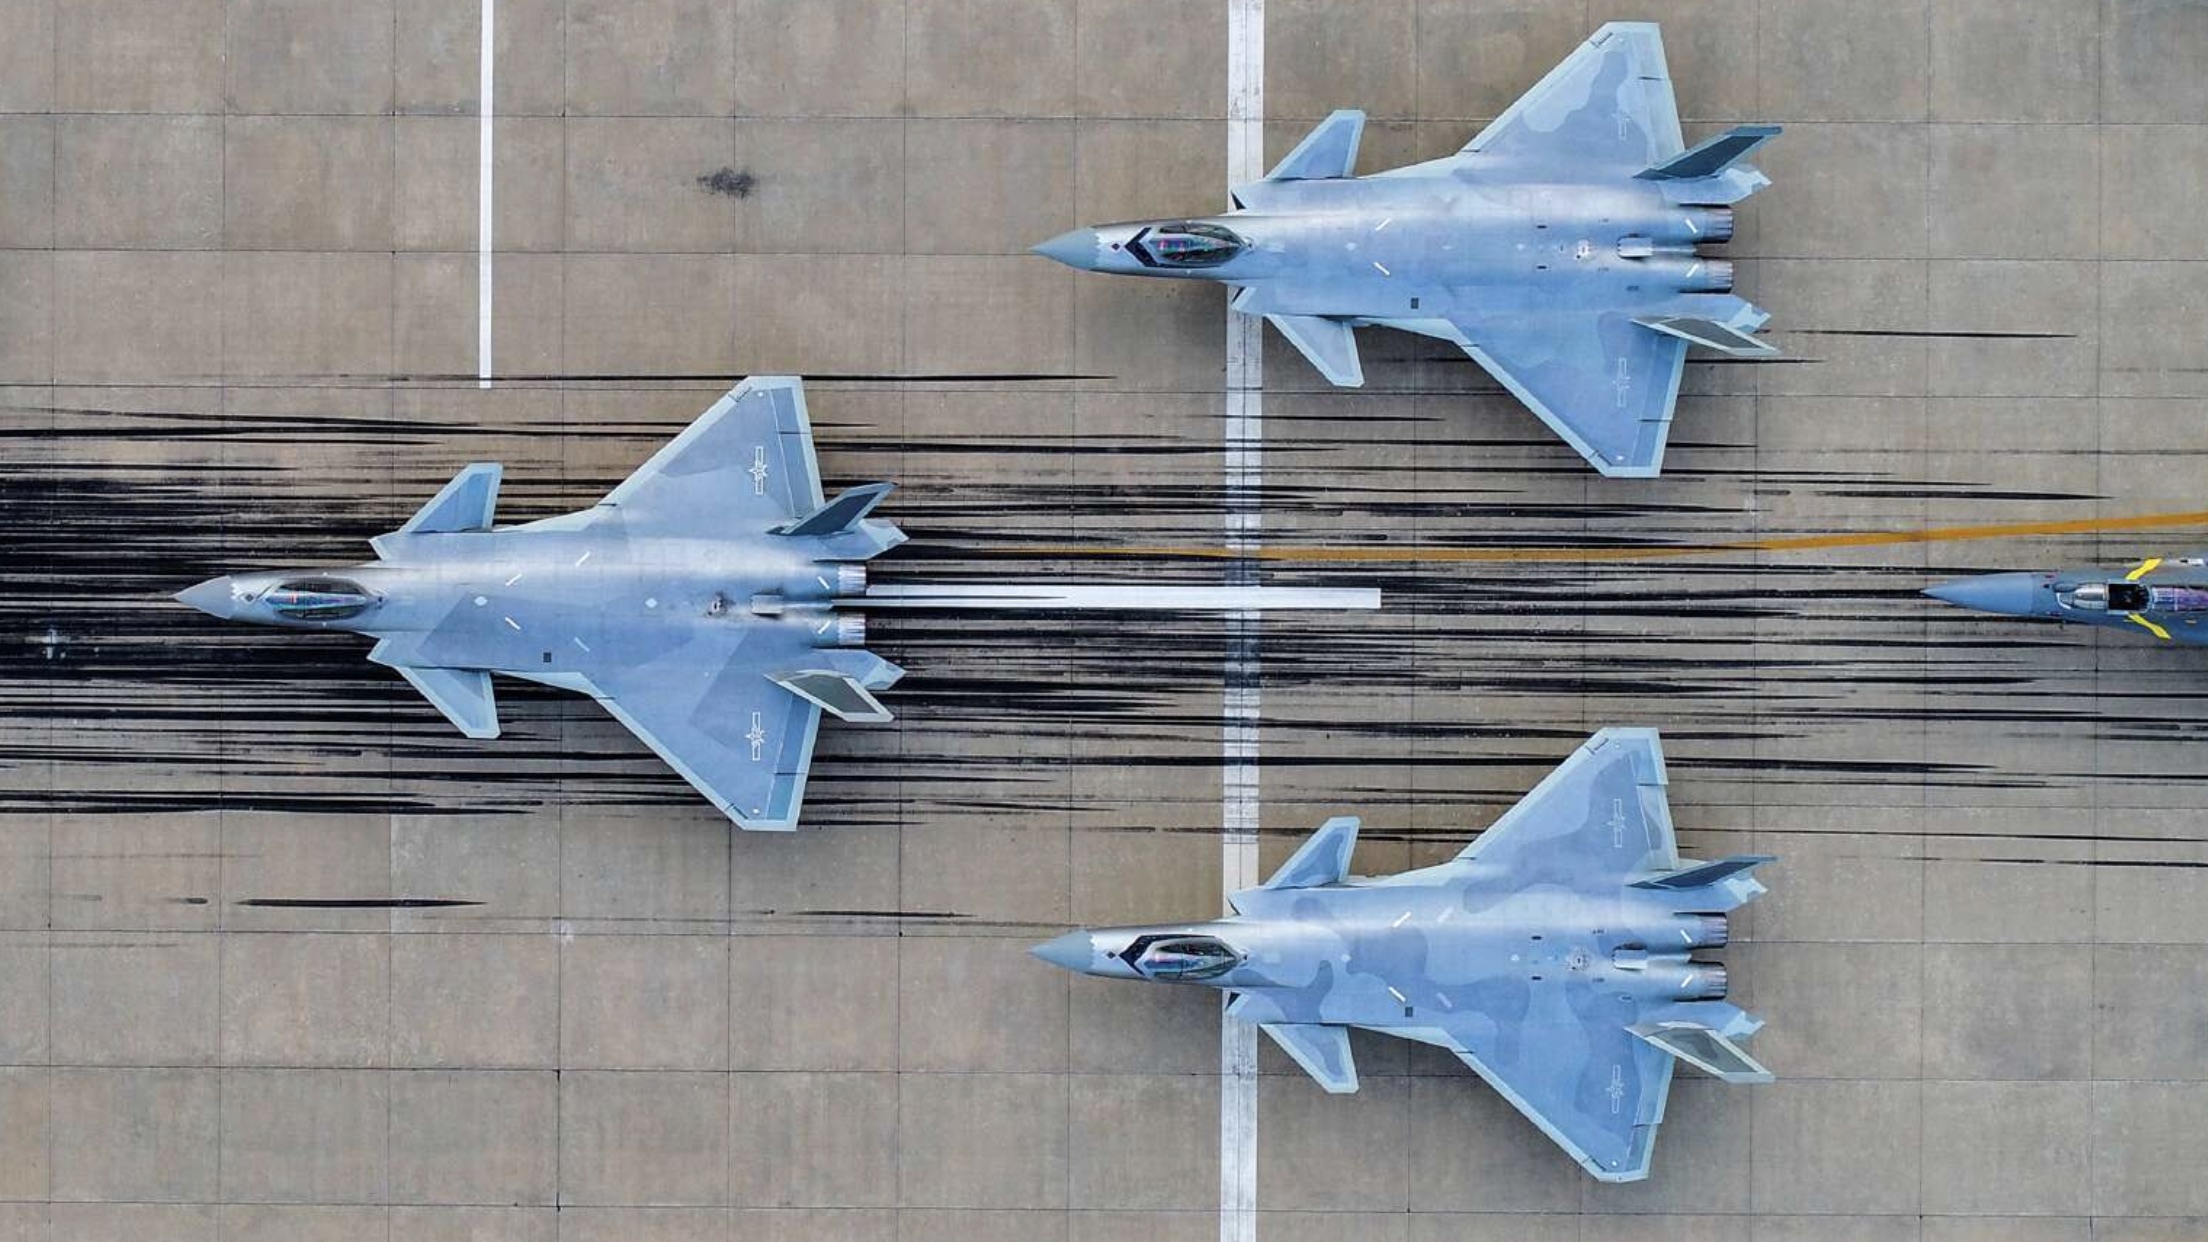 Китай впервые использует новейшие истребители J-20 на учениях  это аналог самолёта F-35